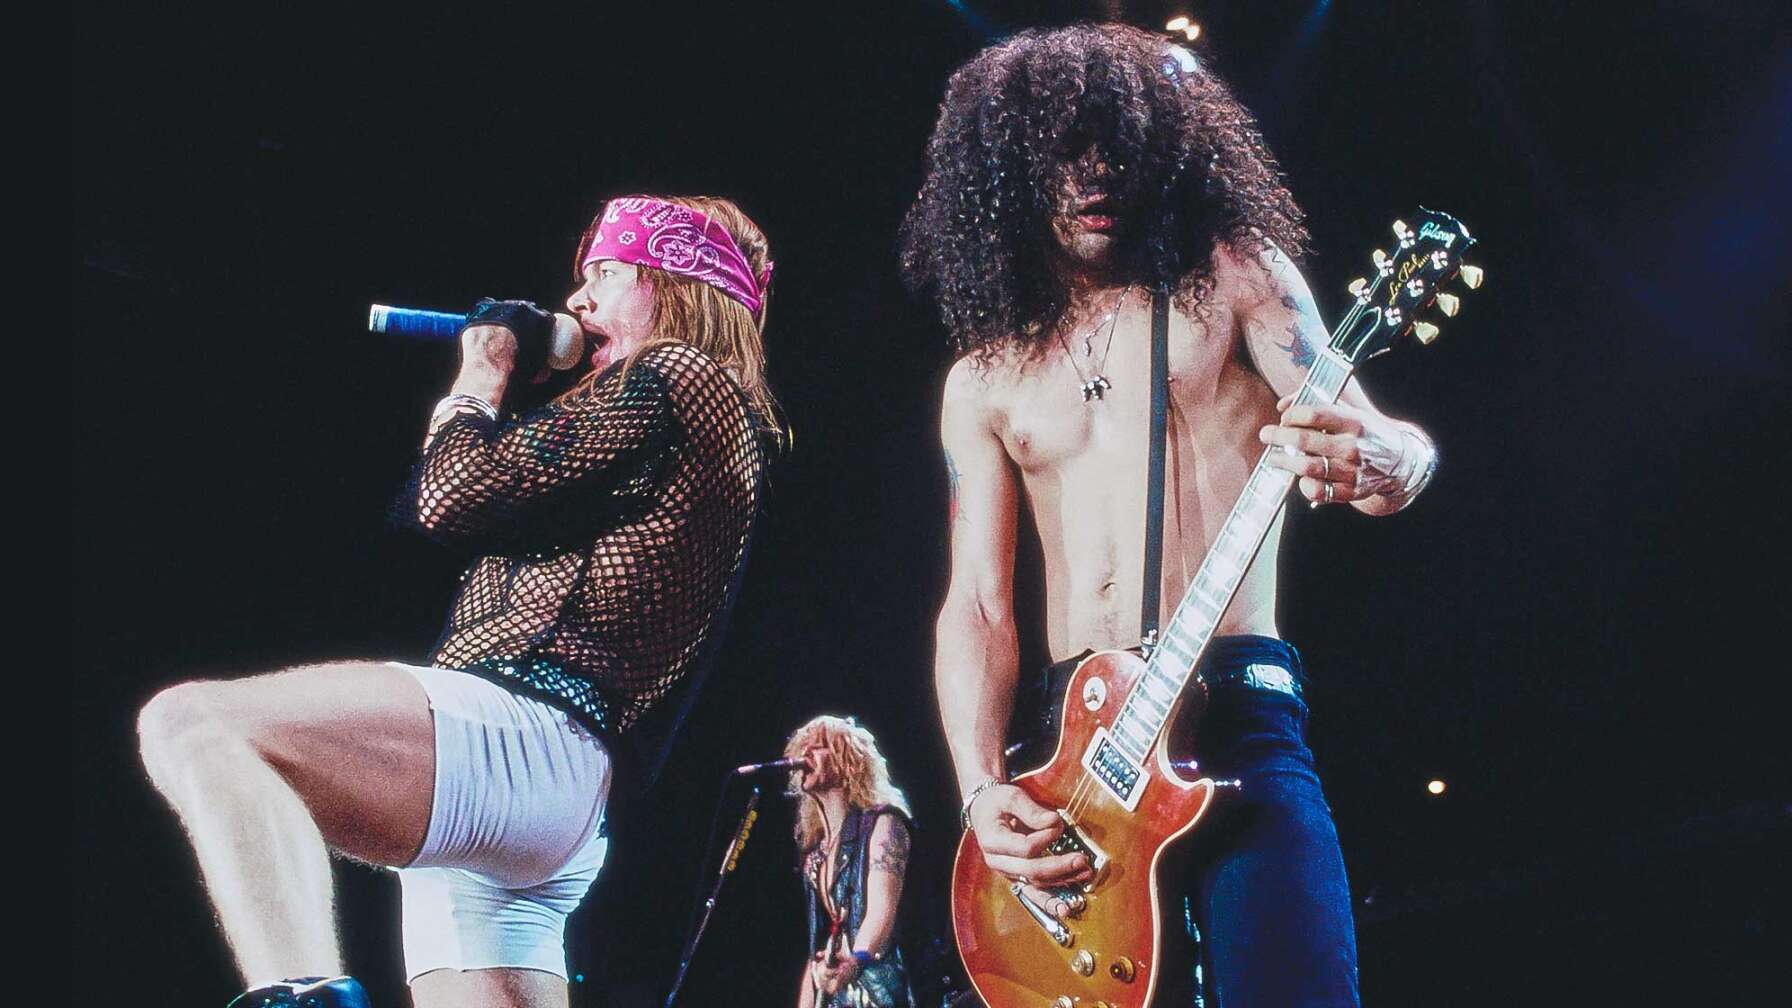 Guns N' Roses bei einer Konzert-Performance - von links nach rechts: Axl Rose, Duff McKagan und Slash.